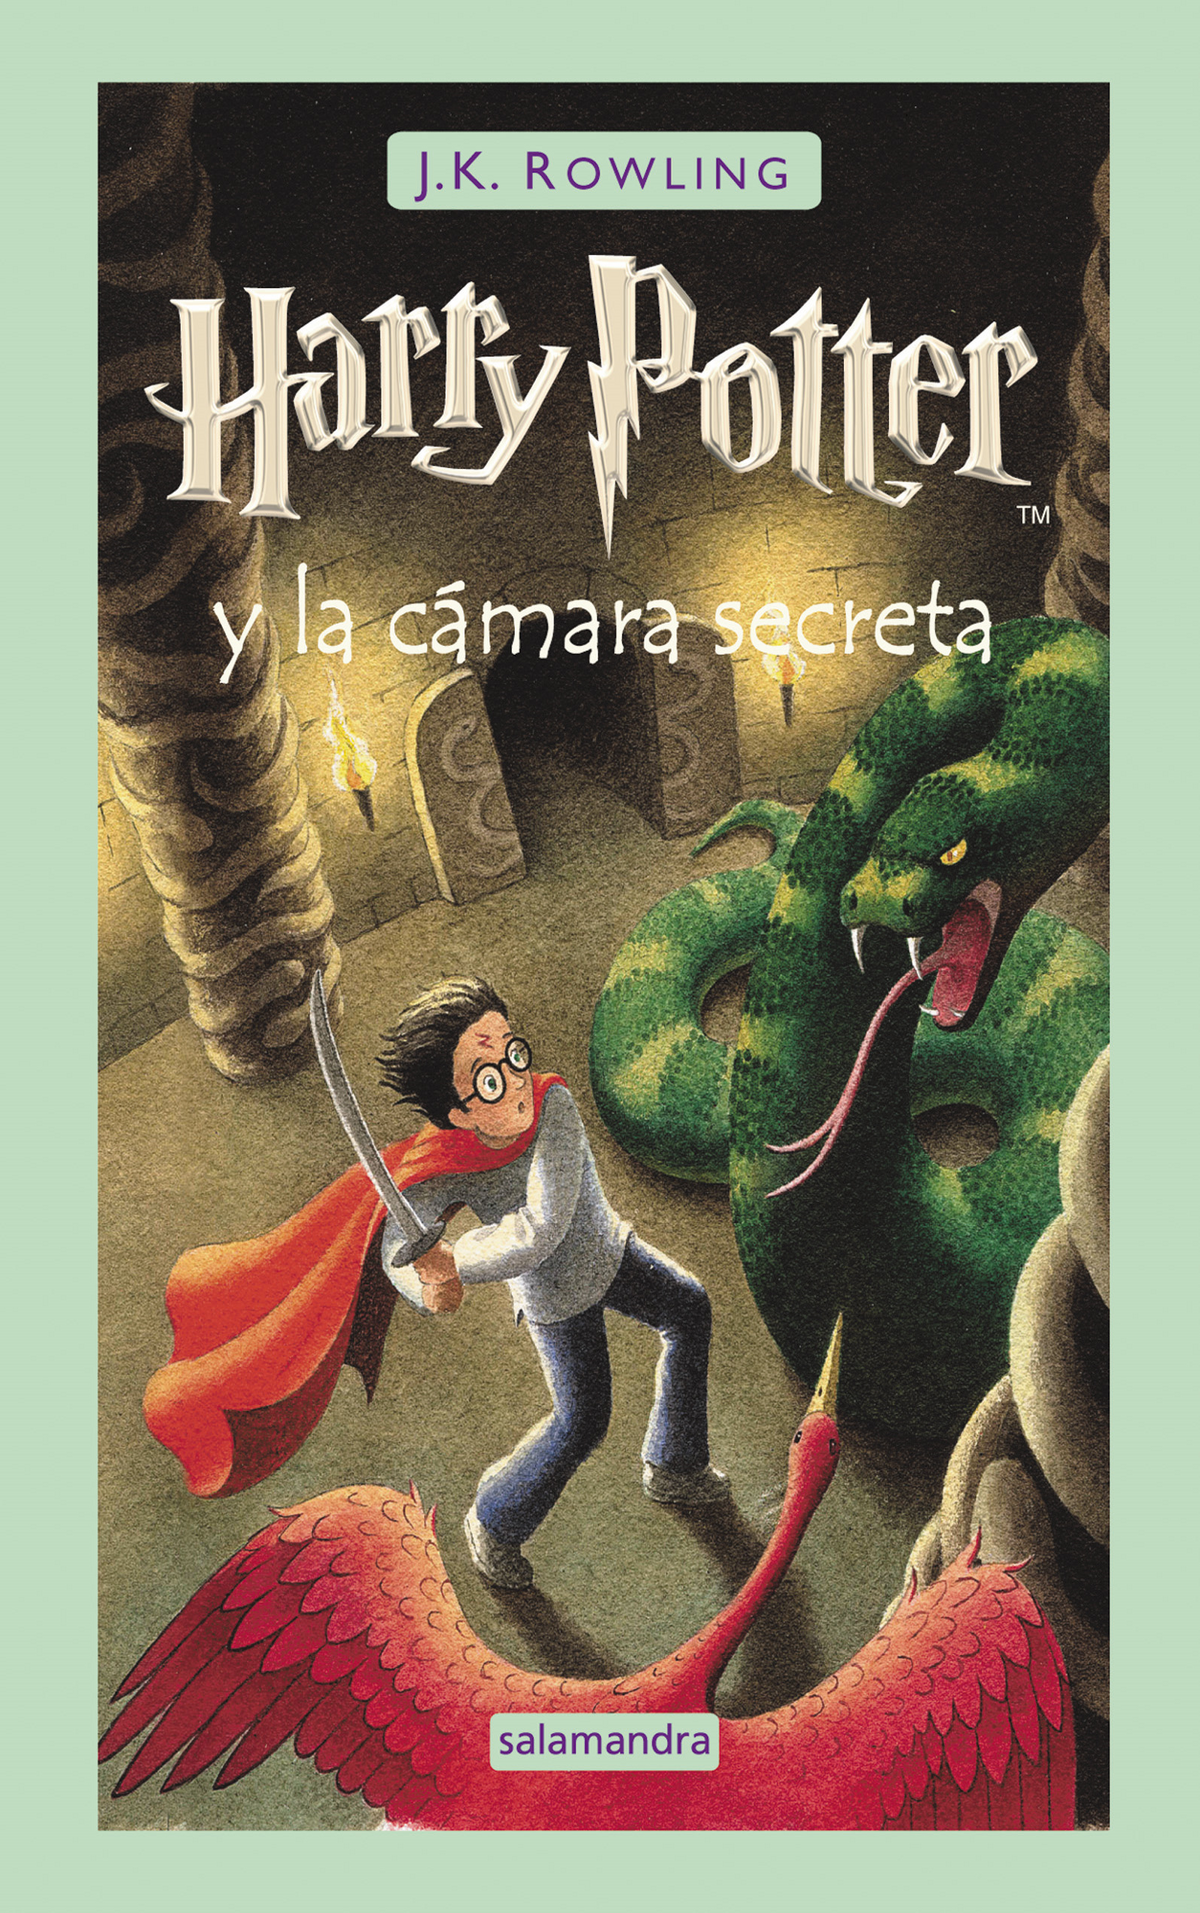 Contratado Sureste Malgastar Harry Potter y la cámara secreta | Harry Potter Wiki | Fandom